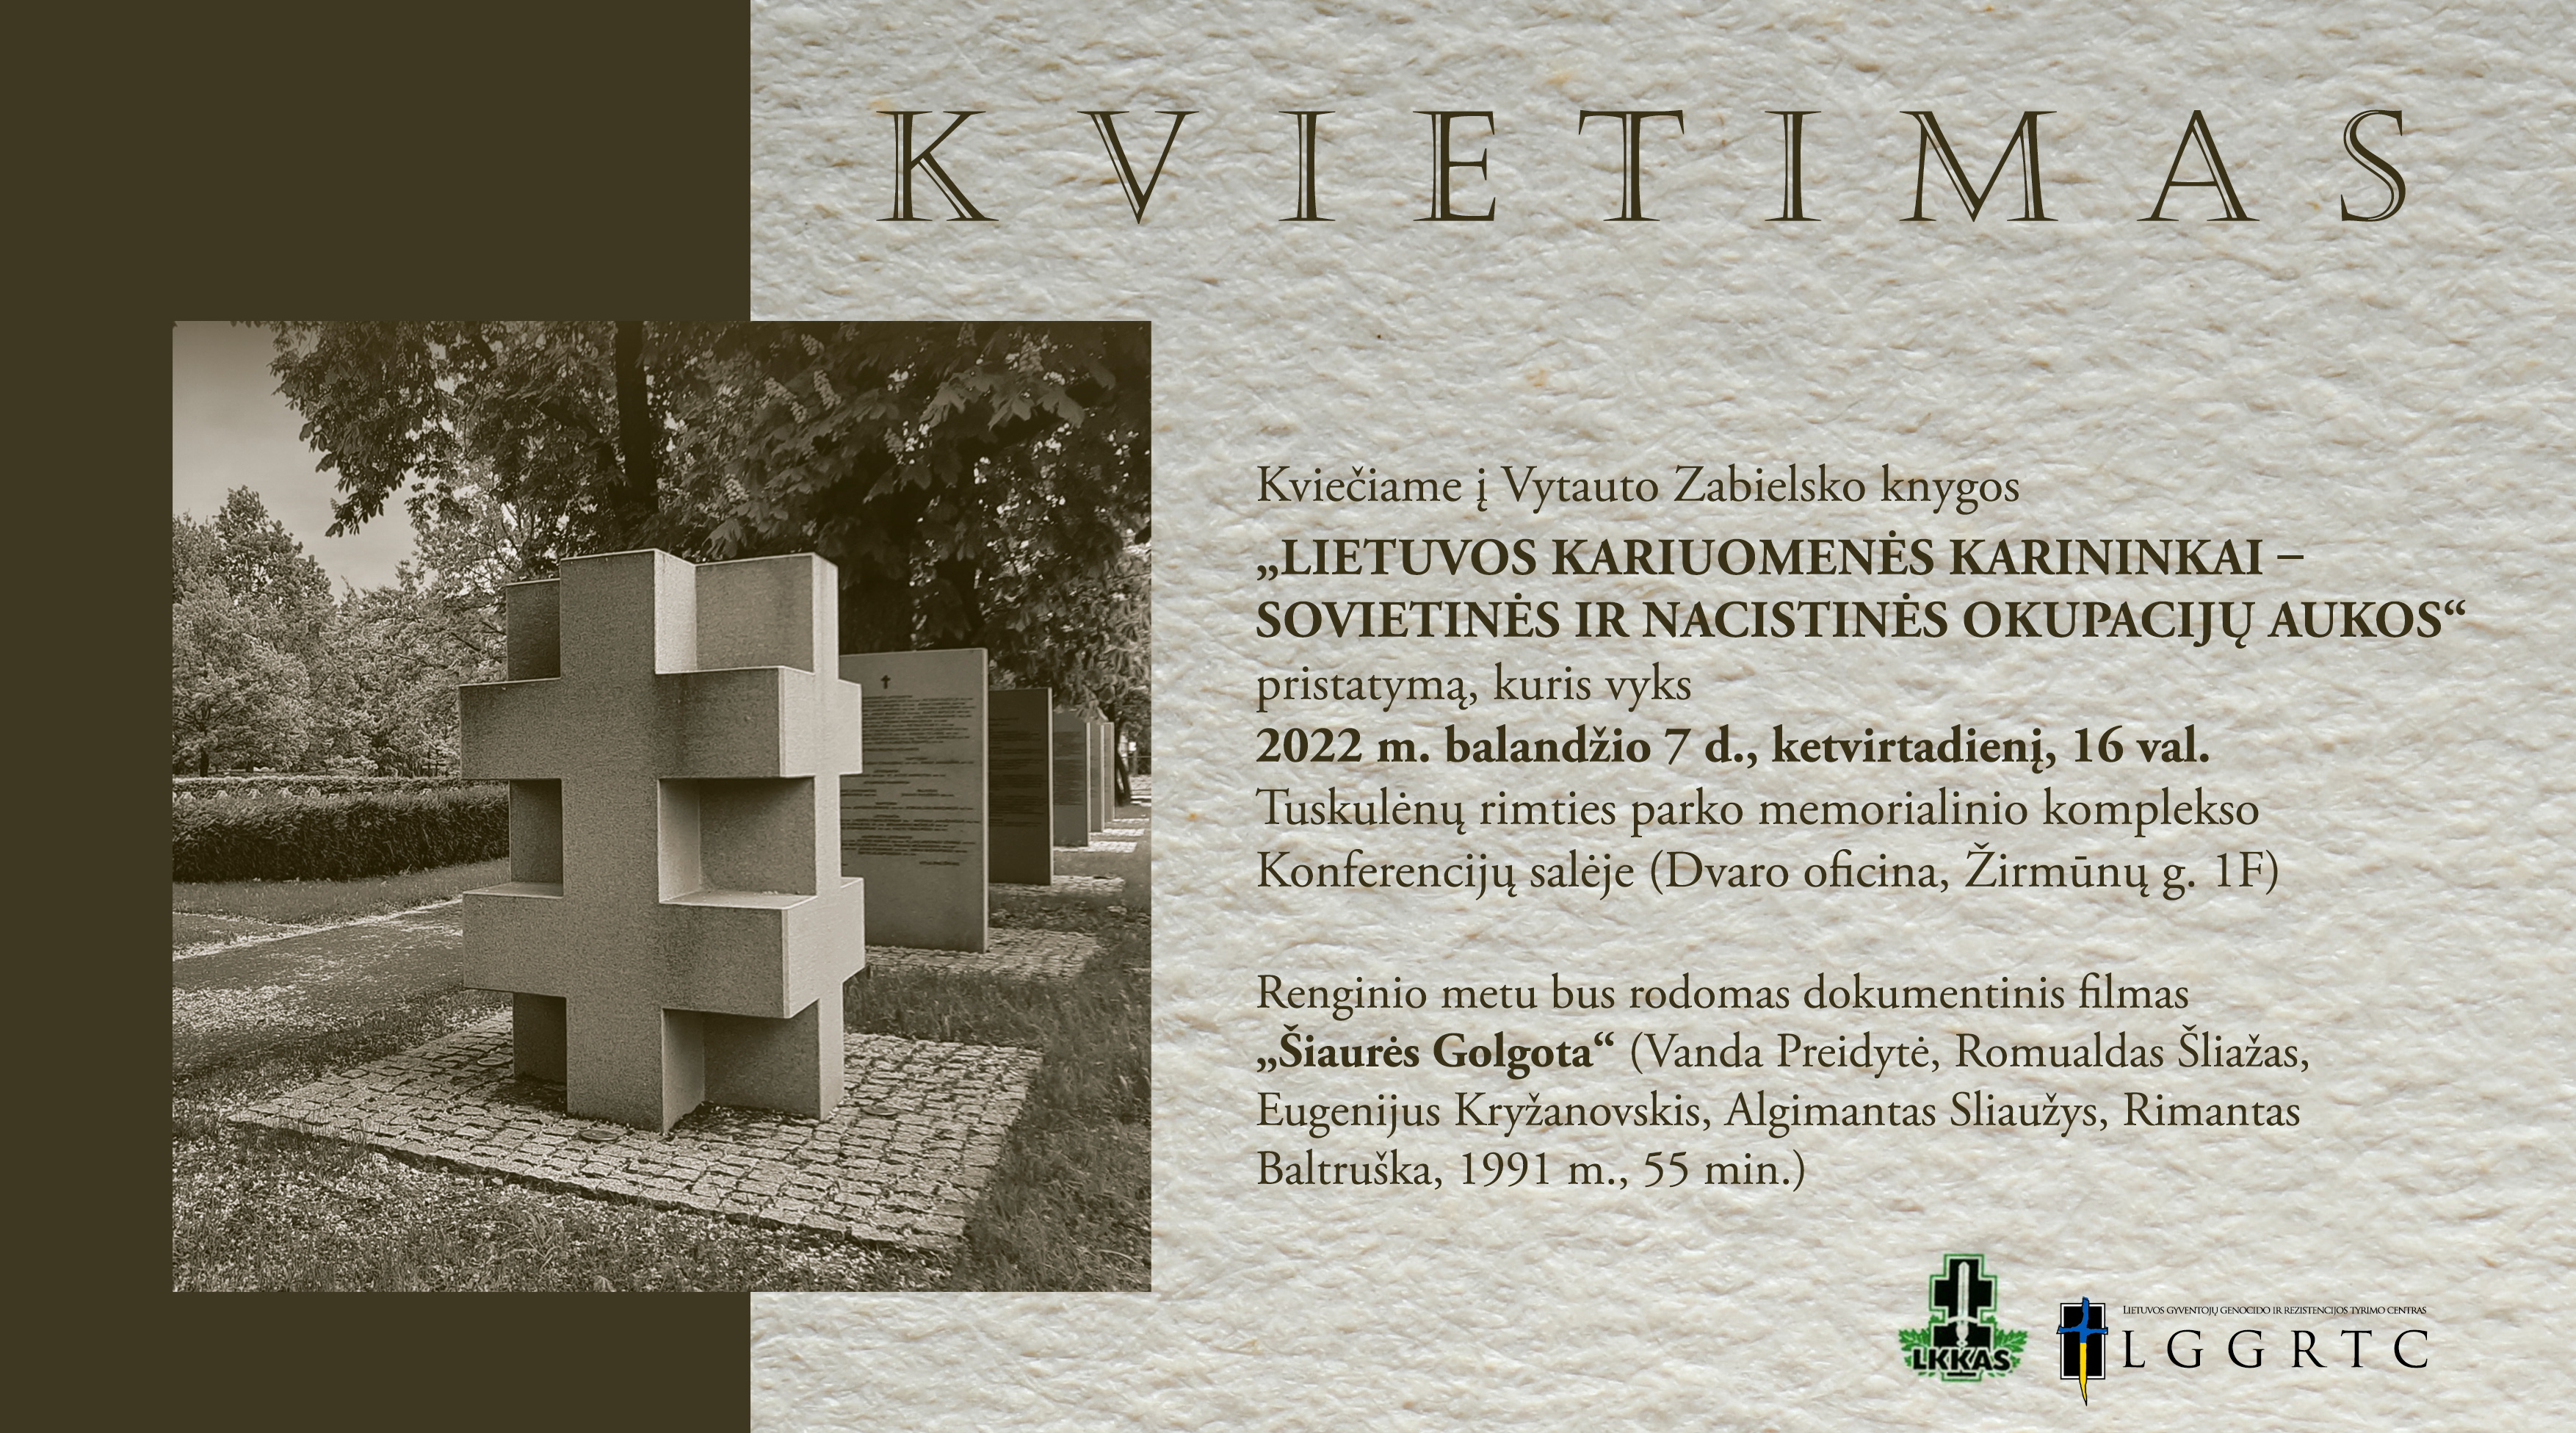 Kviečiame į Vytauto Zabielsko knygos ,,Lietuvos kariuomenės karinininkai – sovietinės ir nacistinės okupacijų aukos“knygos pristatymą